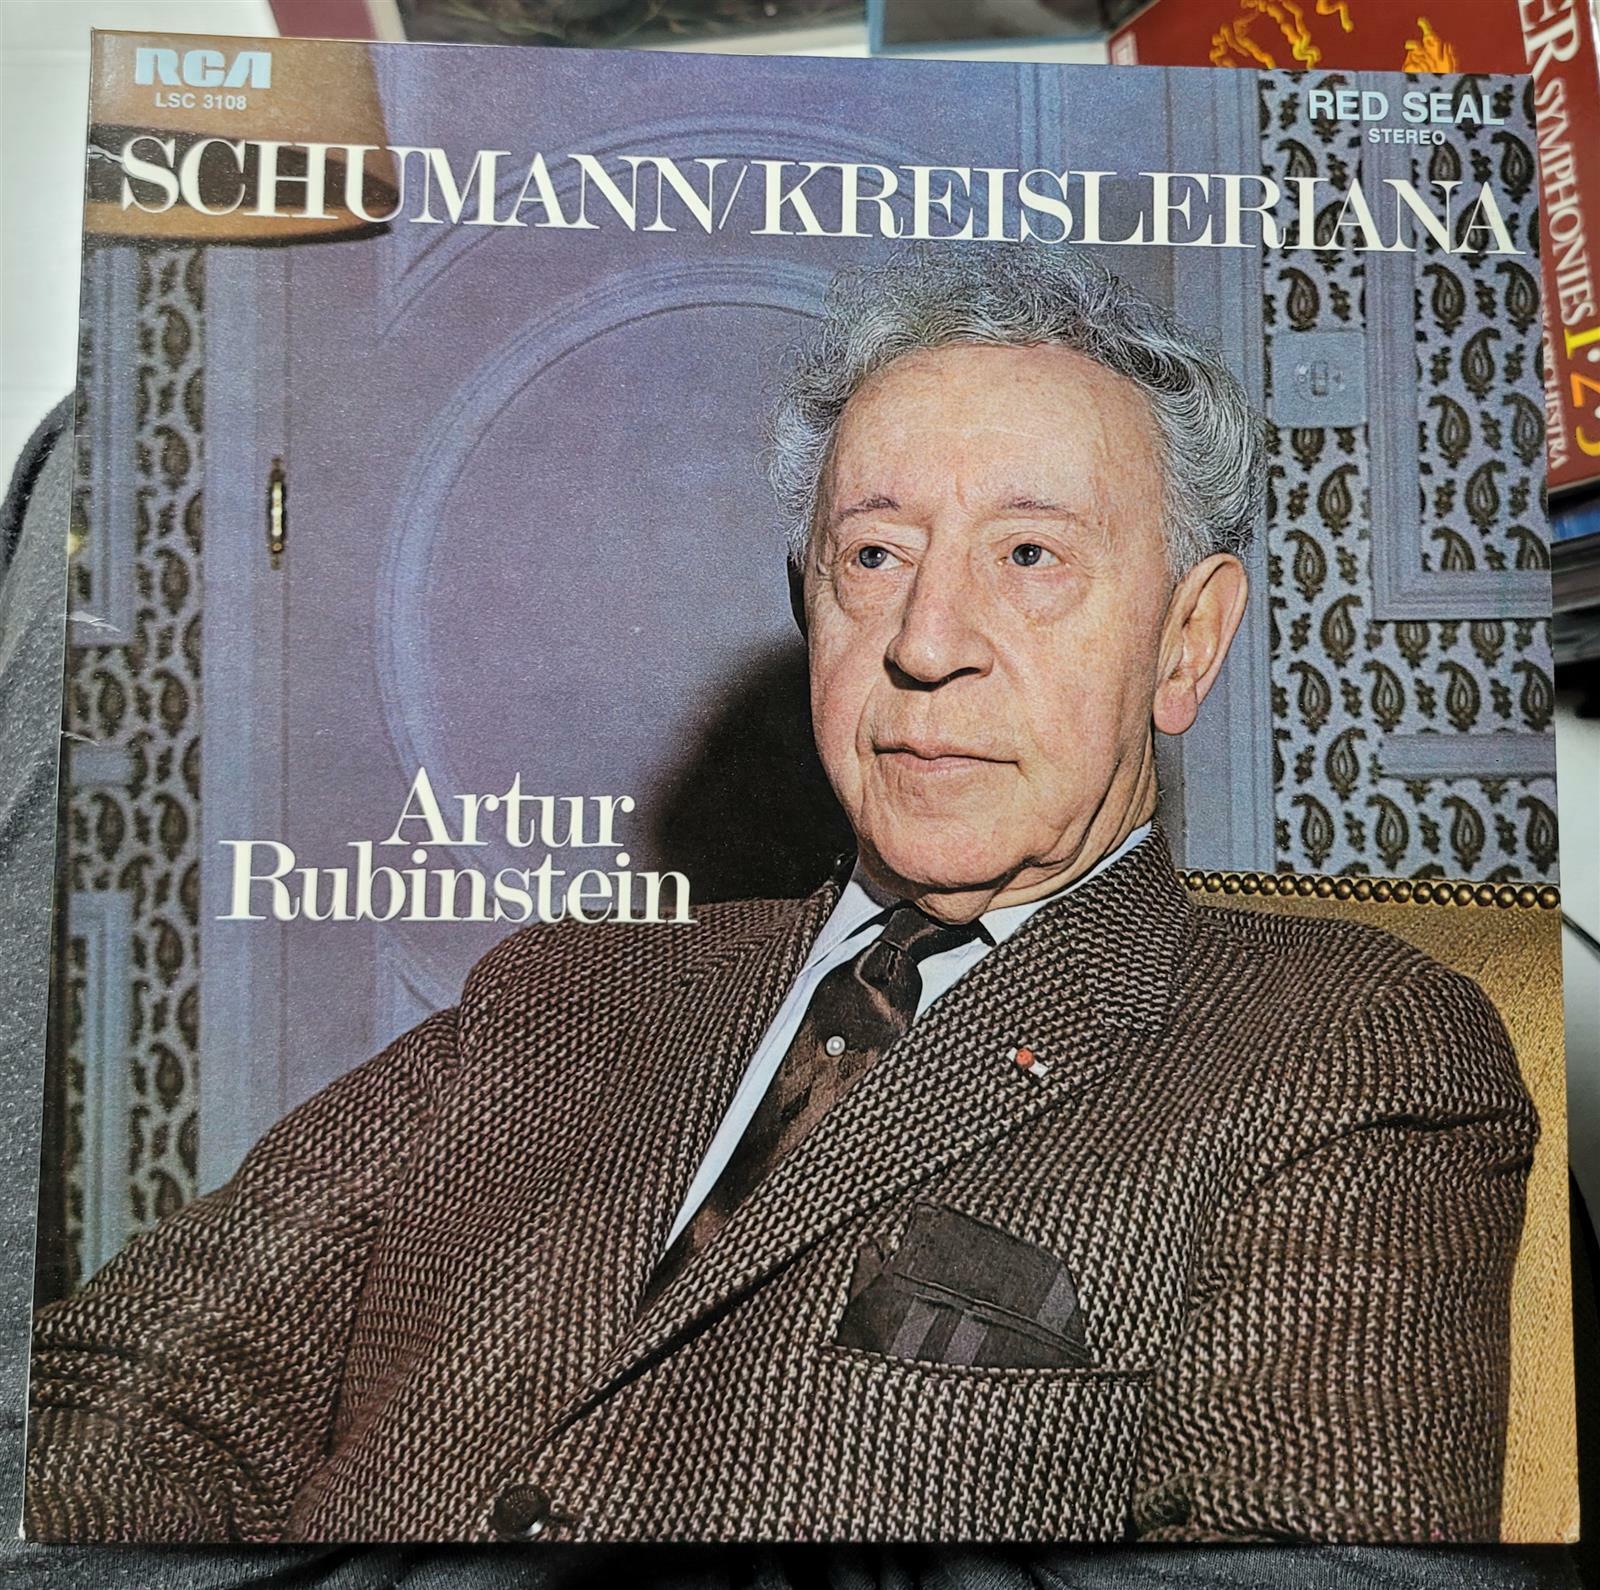 [중고] [수입][LP] Arthur Rubinstein - 슈만 : 크라이슬레리아나, 아라베스크 등 (독일)(1970)